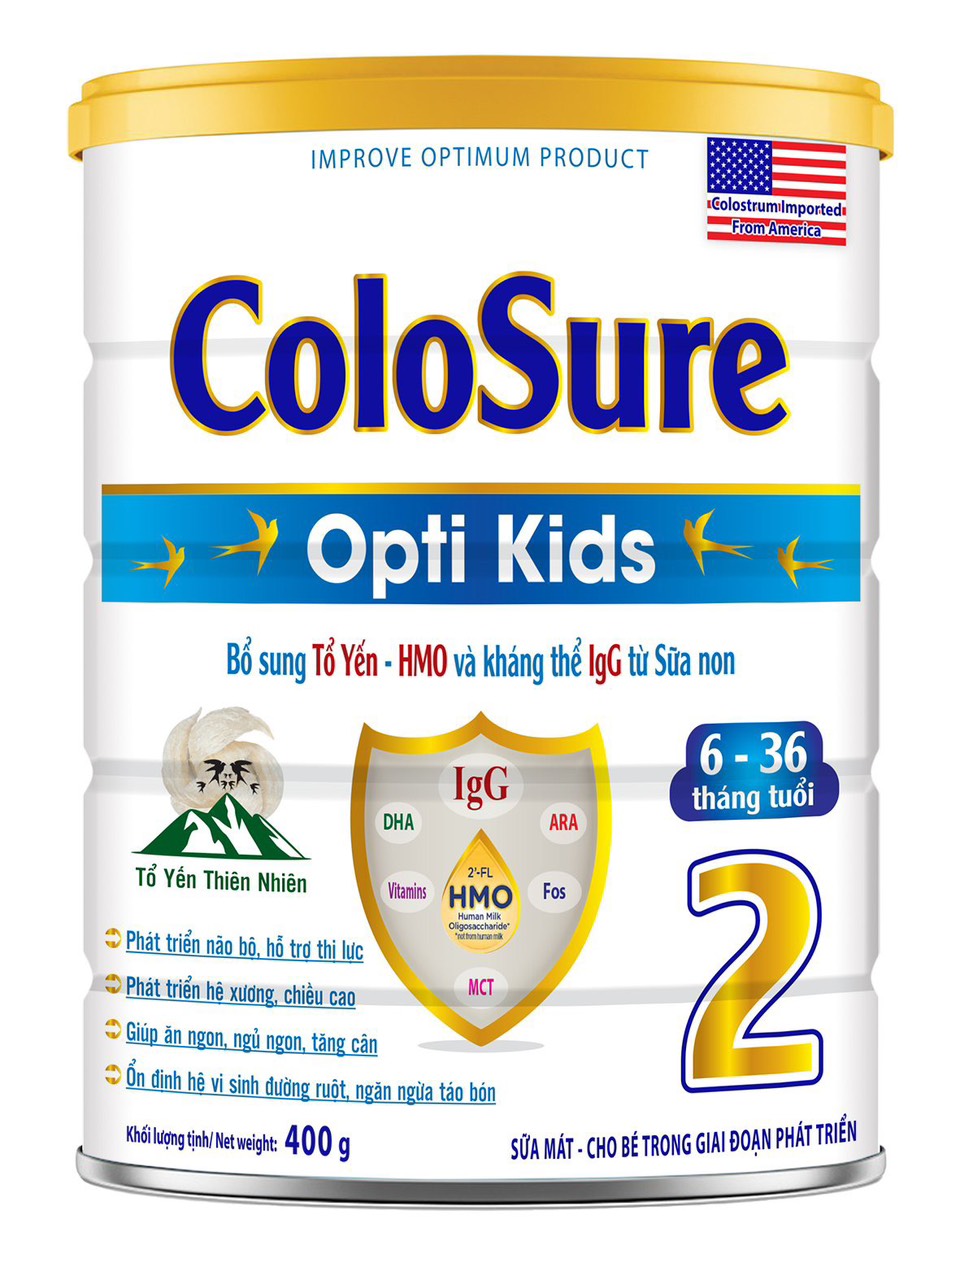 Sữa Bột Colosure Opti Kids 2 dành cho bé từ 6 tháng đến 36 tháng tuổi